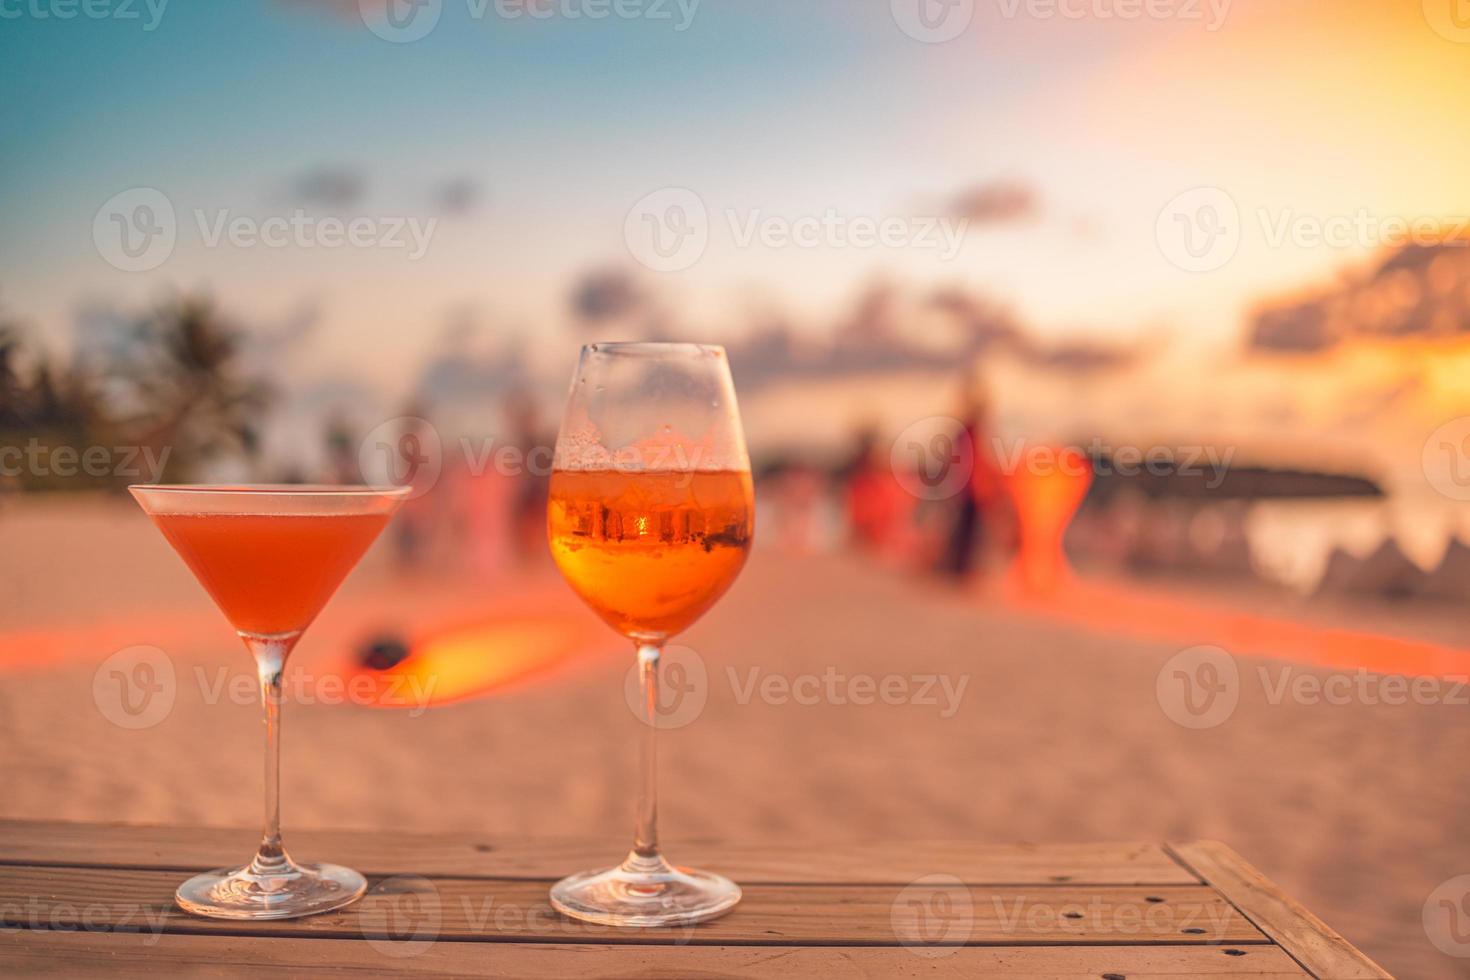 due cocktail drink con sfocatura persone festa in spiaggia e colorato cielo al tramonto sullo sfondo. stile di vita di lusso all'aperto, colori rilassanti e romantici, persone sfocate che fanno festa in una sera d'estate foto